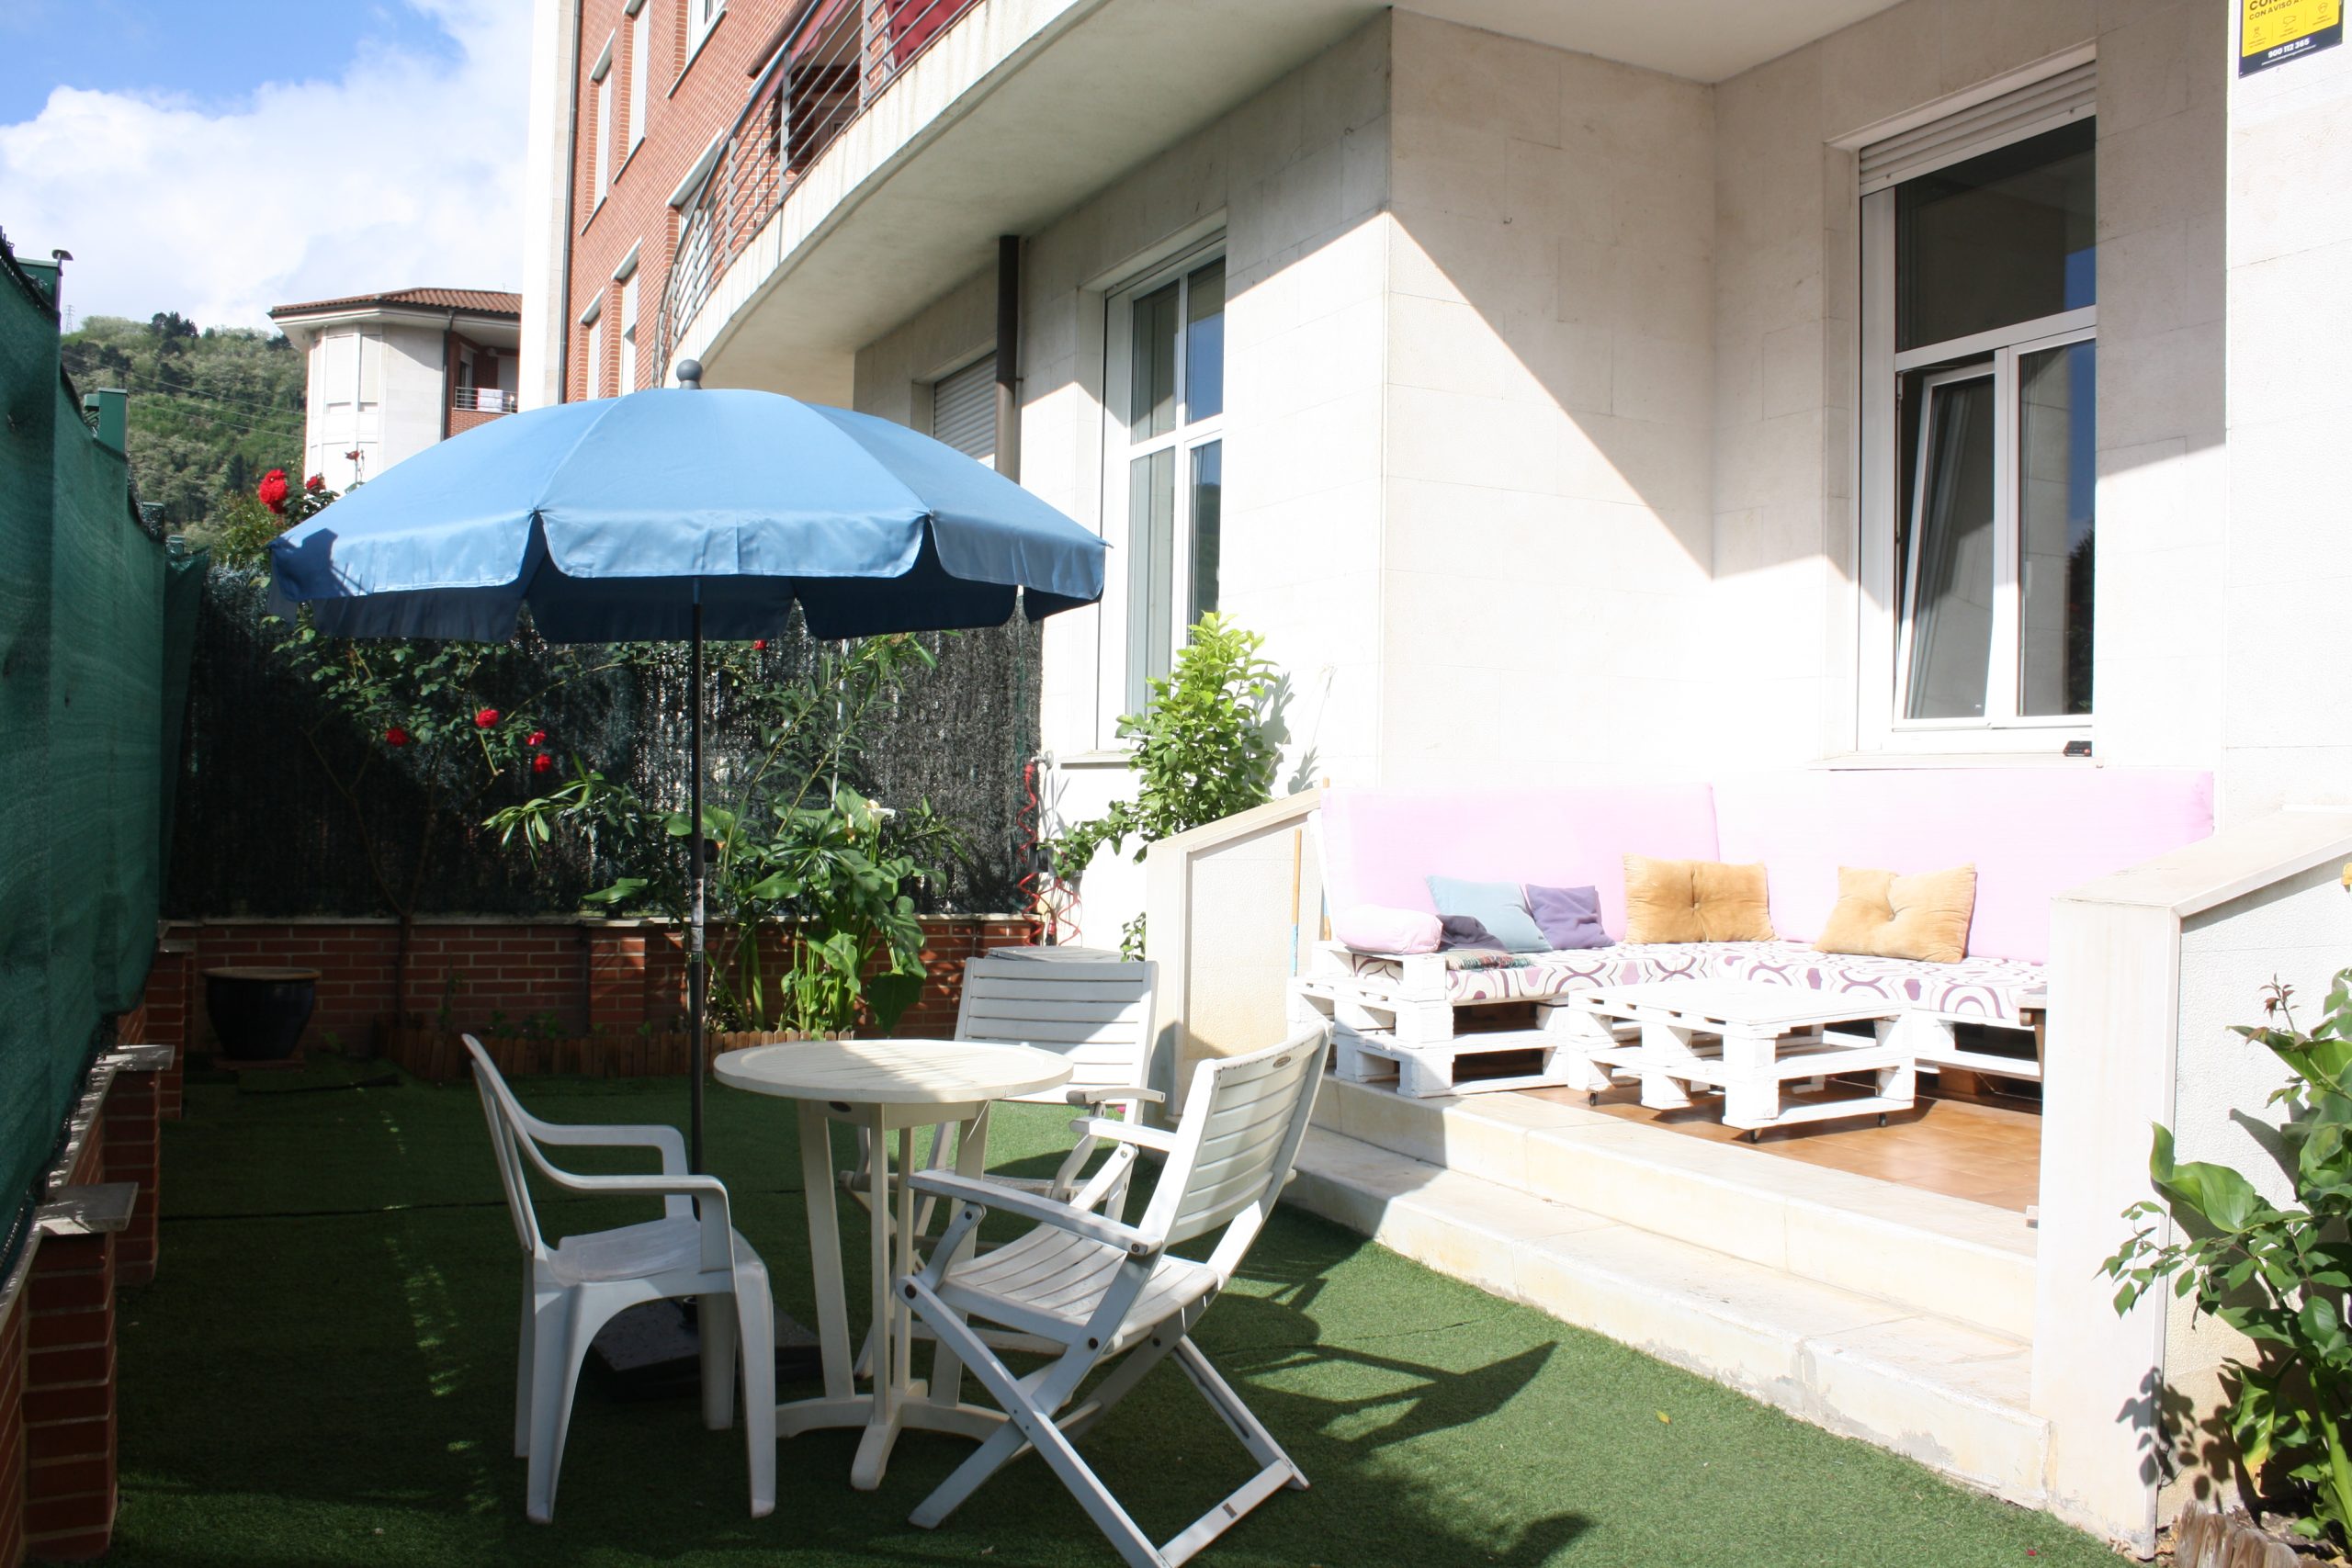 apartmen tfor rent in bilbao garden